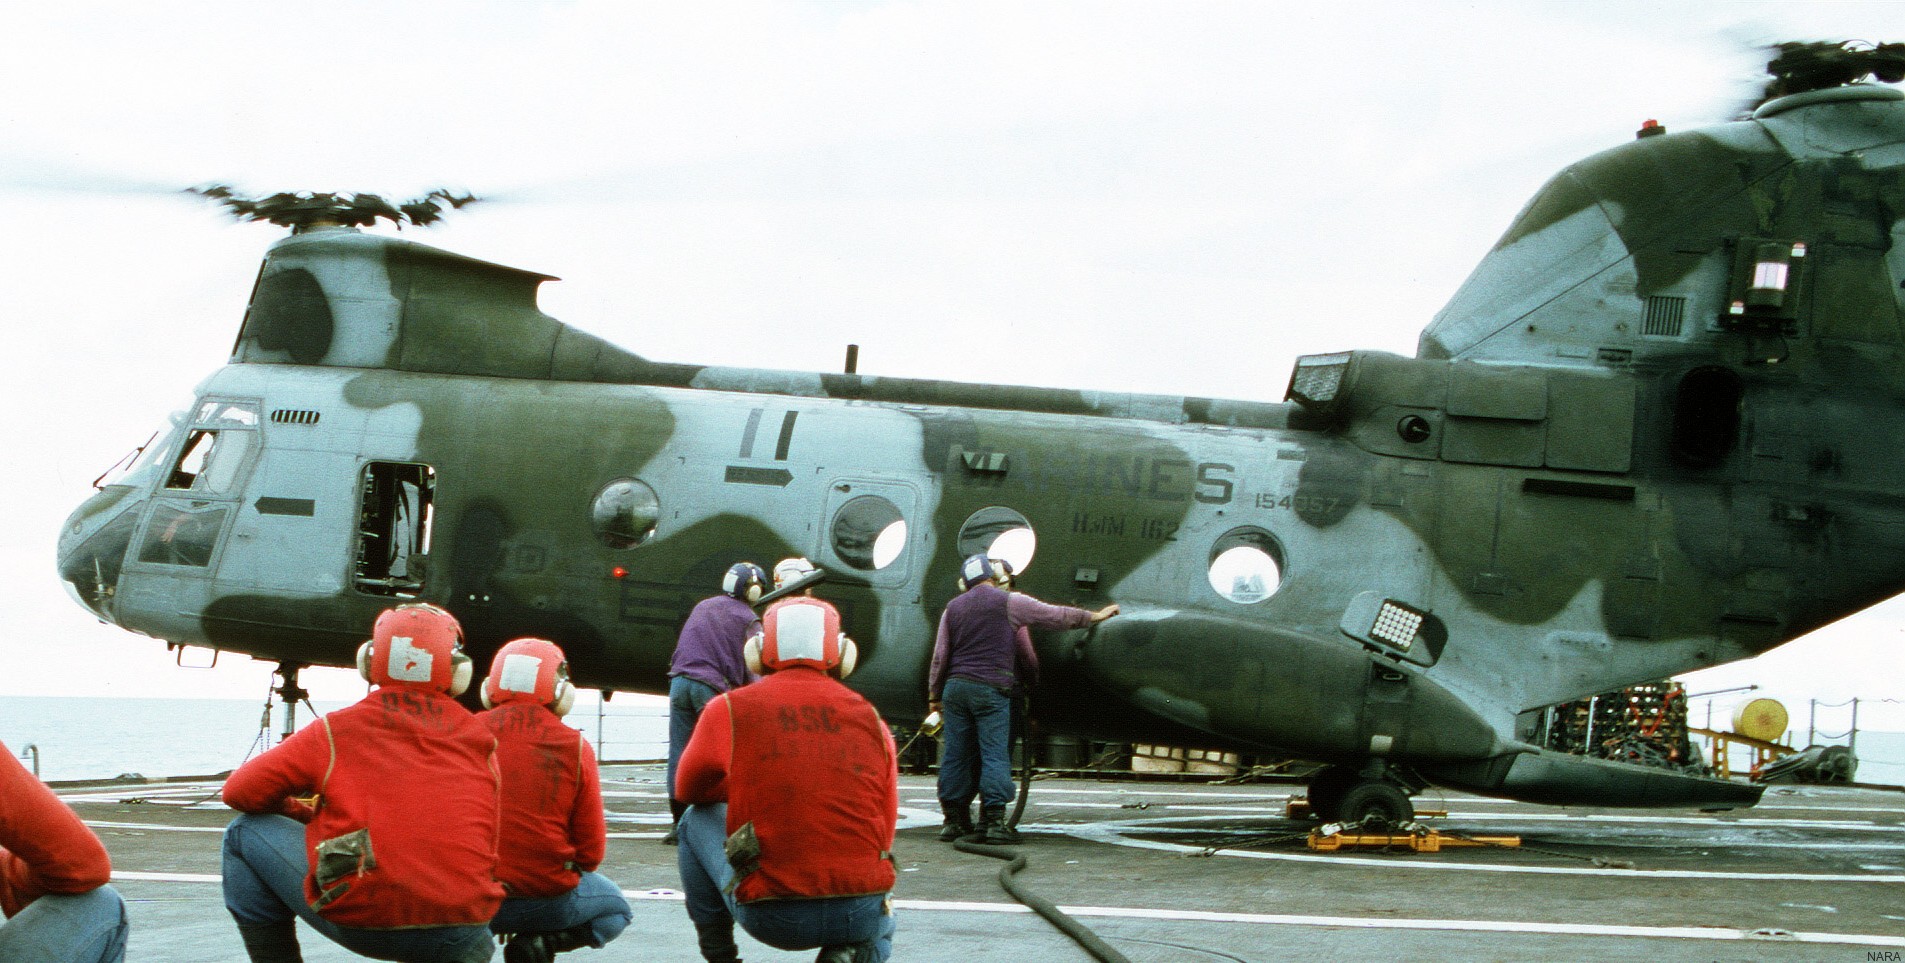 hmm-162 golden eagles marine medium helicopter squadron ch-46e sea knight usmc 41